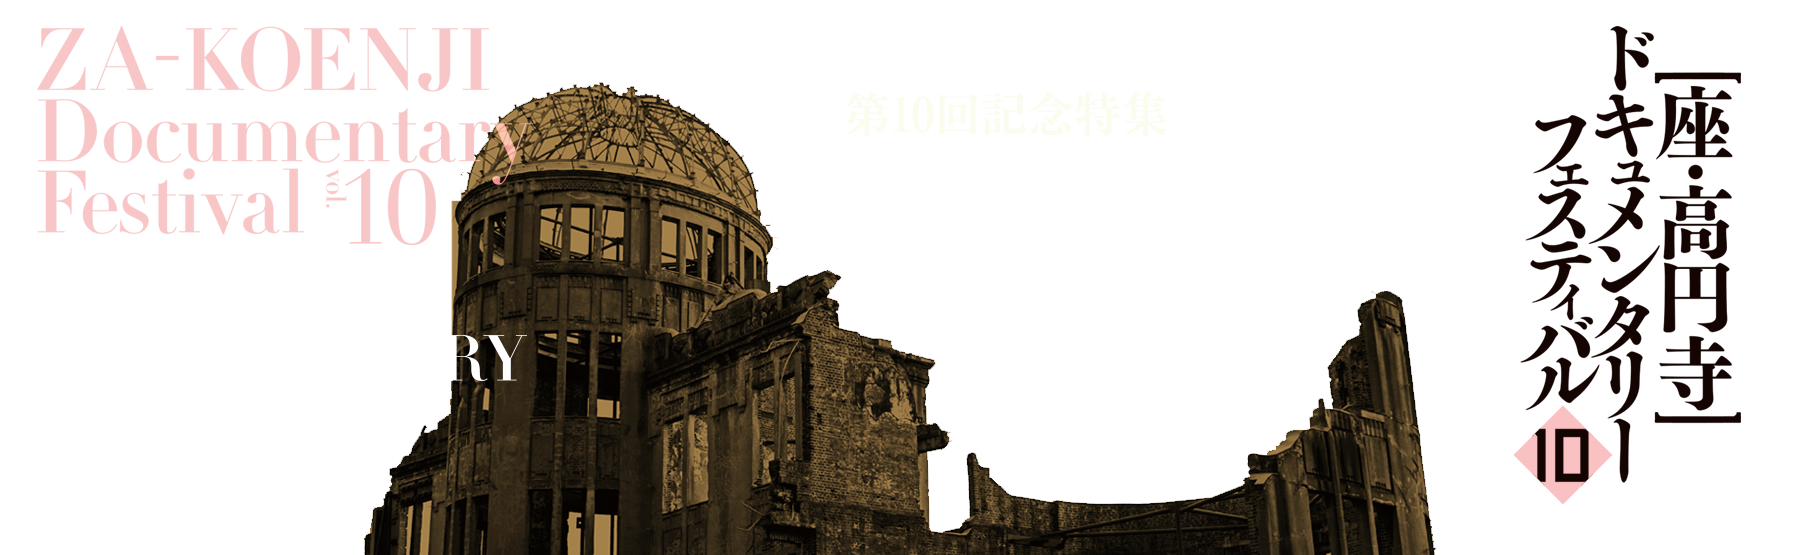 第10回 座・高円寺ドキュメンタリーフェスティバル